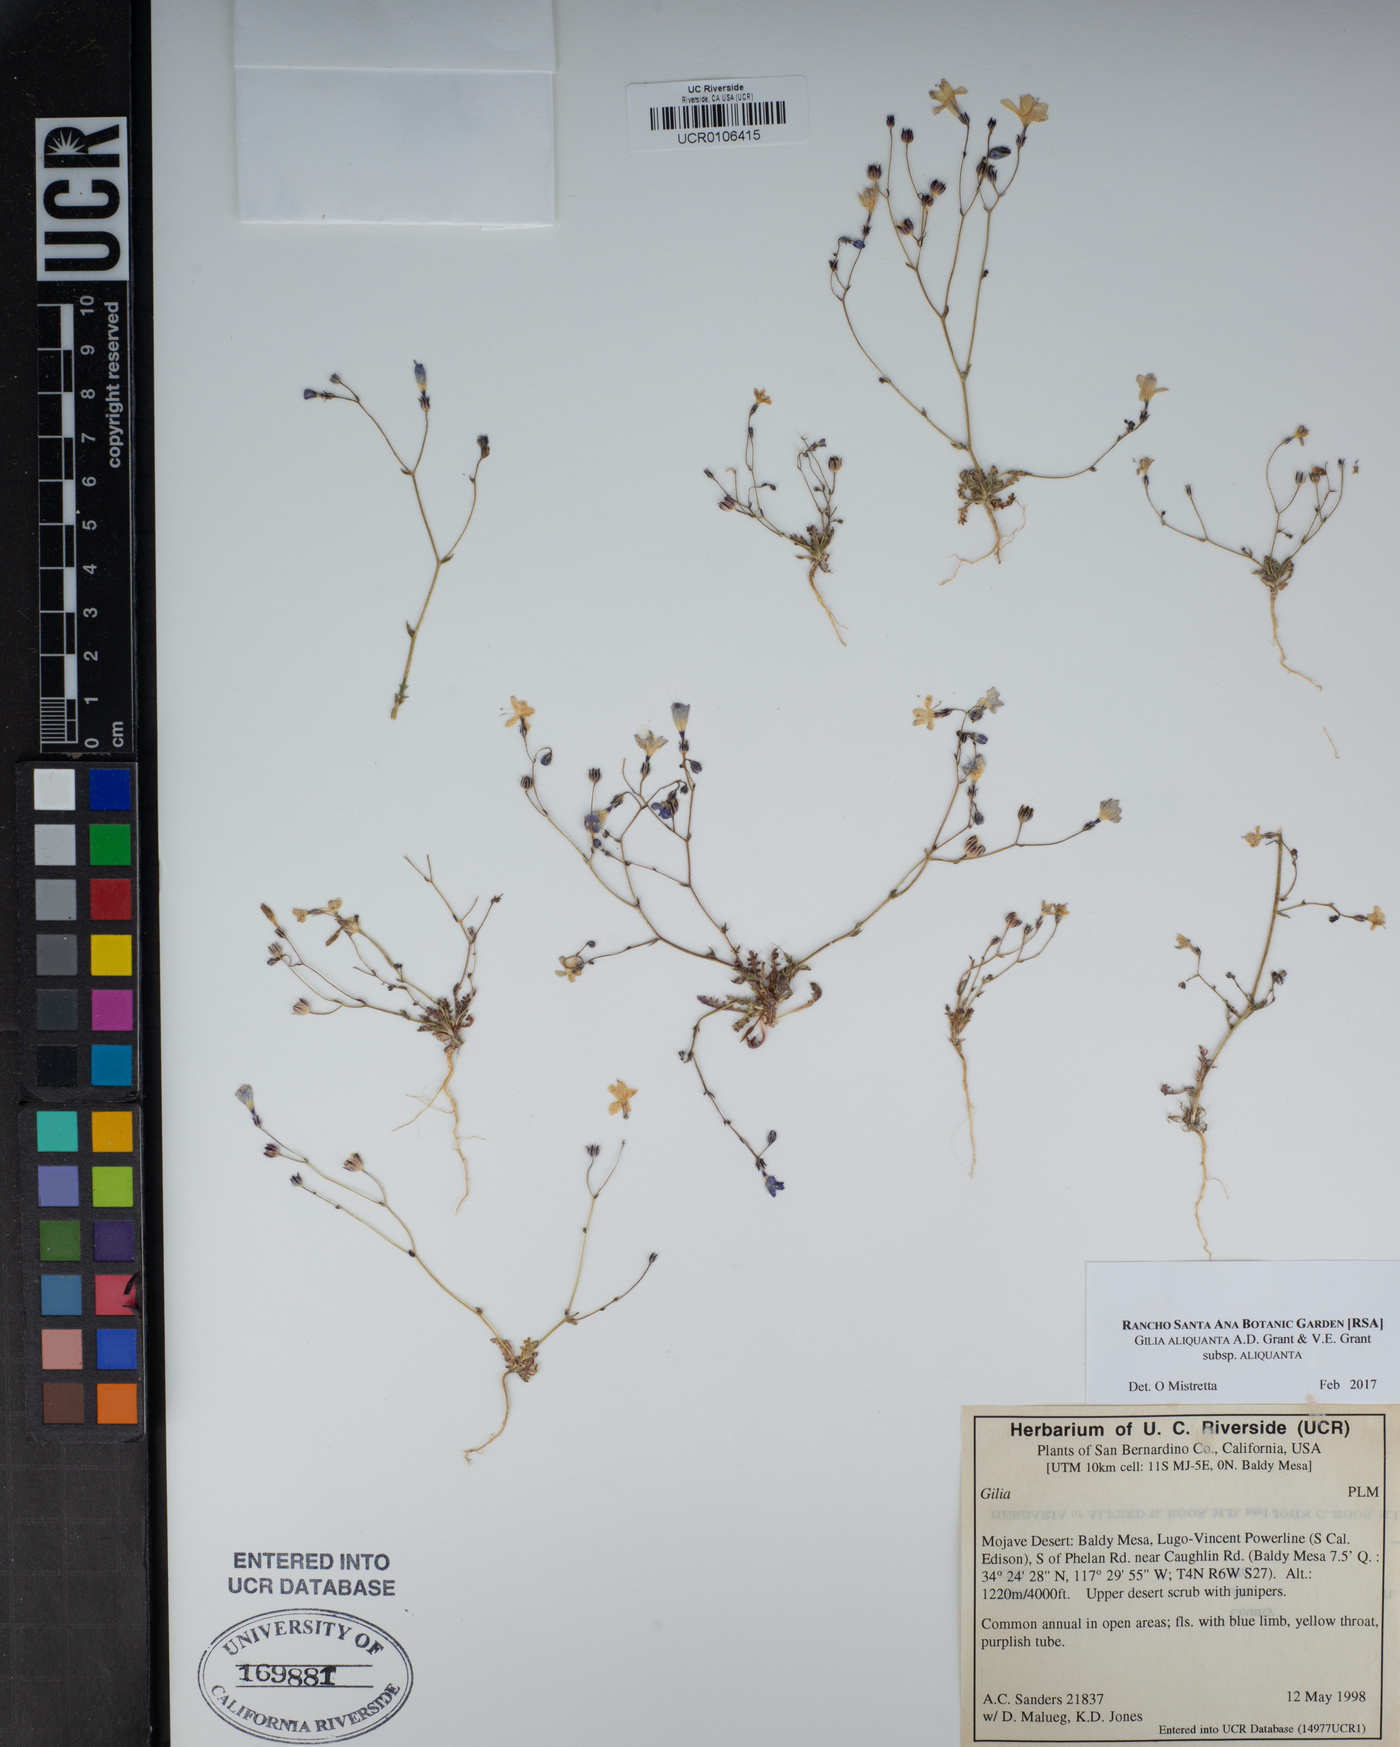 Gilia aliquanta subsp. aliquanta image